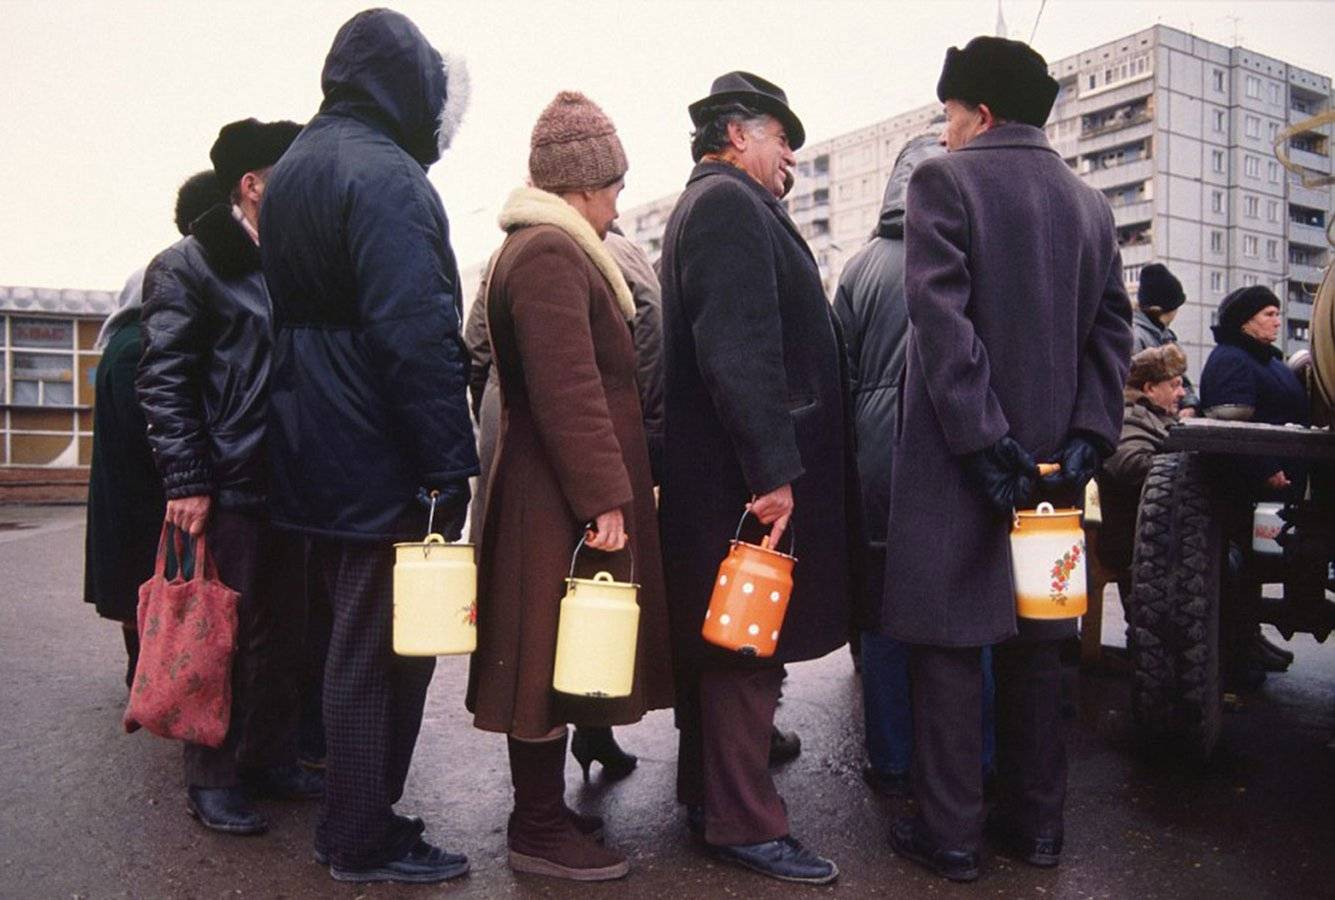 "Тотальный дефицит": всплыли запрещенные фото магазинов в СССР, на которых показана суровая правда жизни в Союзе